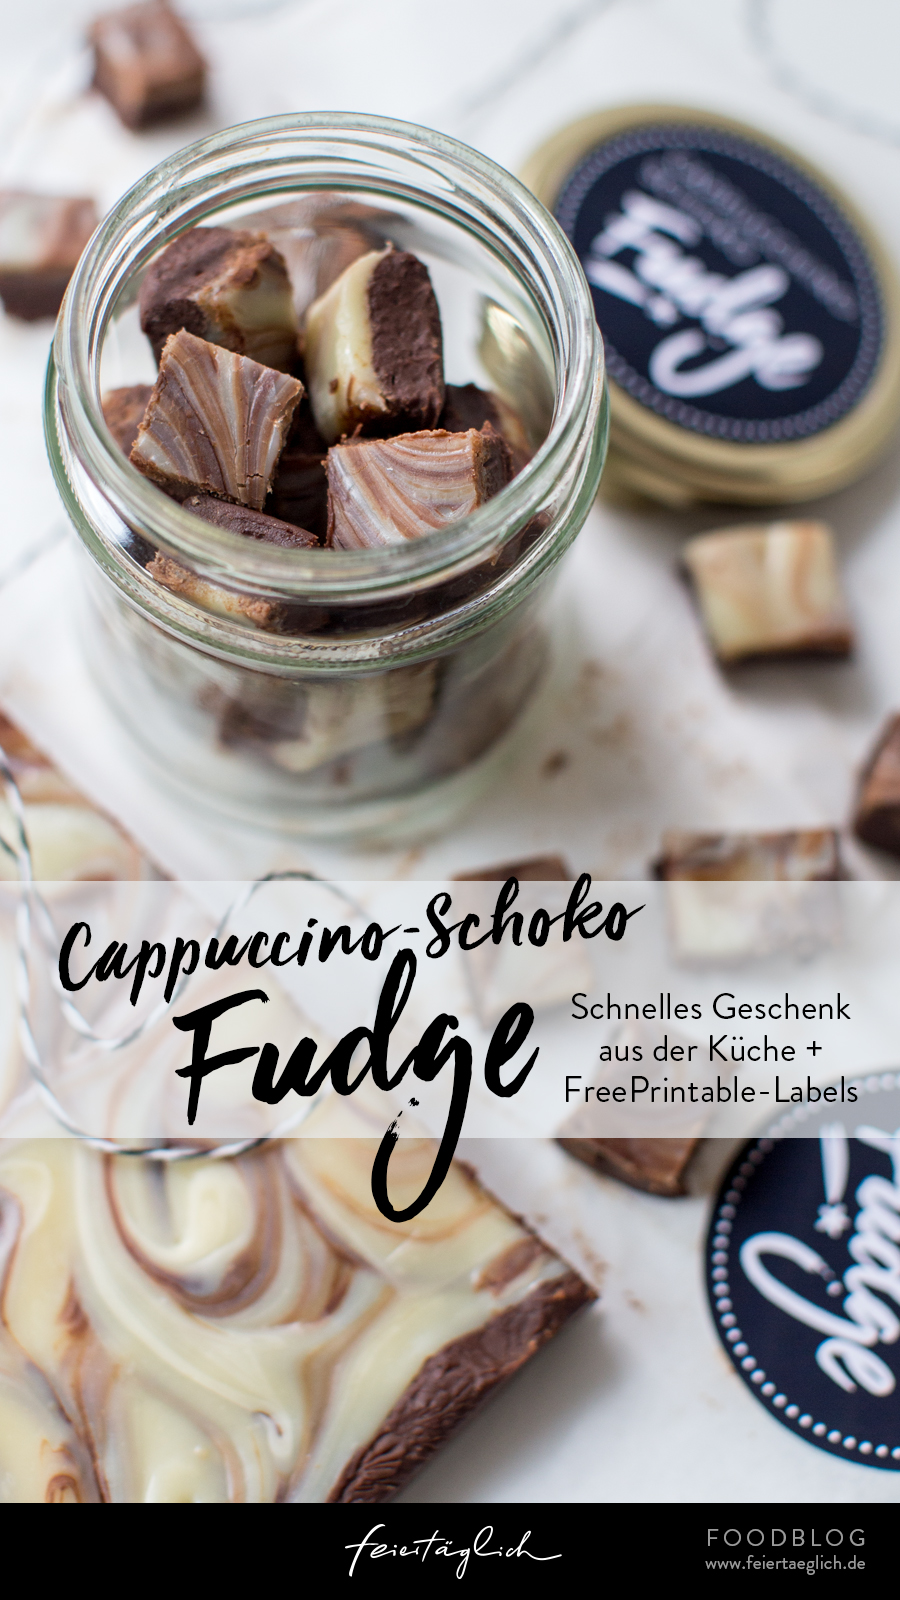 Cappuccino-Schoko-Fudge, schnelles Last-Minute Geschenk aus der Küche. Rezept und Free Printable Labels